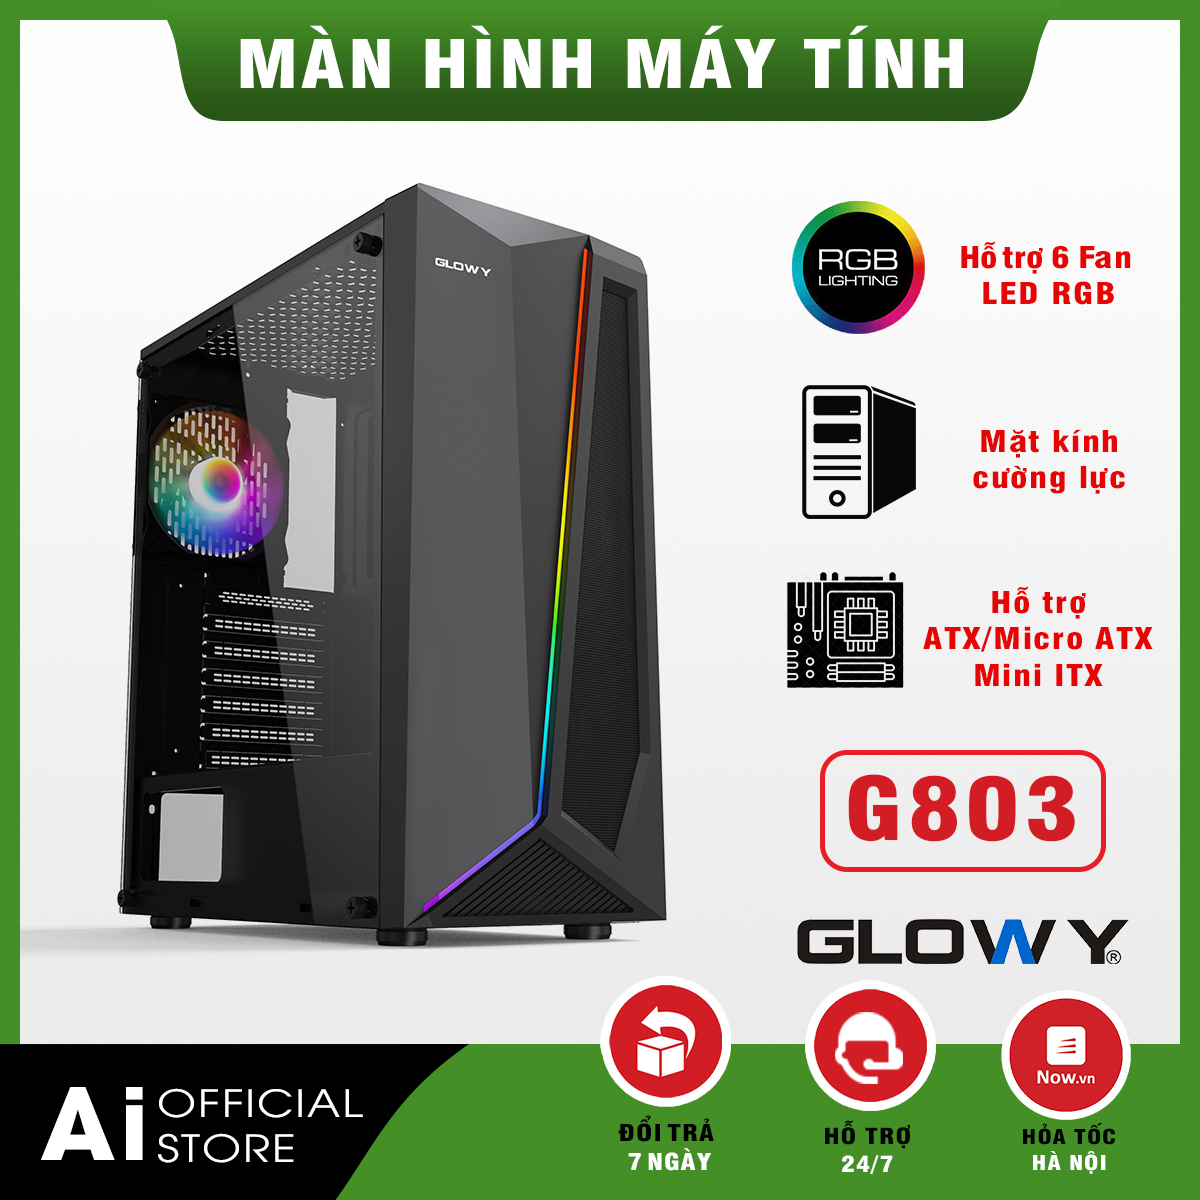 Vỏ case máy tính gaming _ Case Gloway G803_Hỗ trợ 6 Fan LED RGB